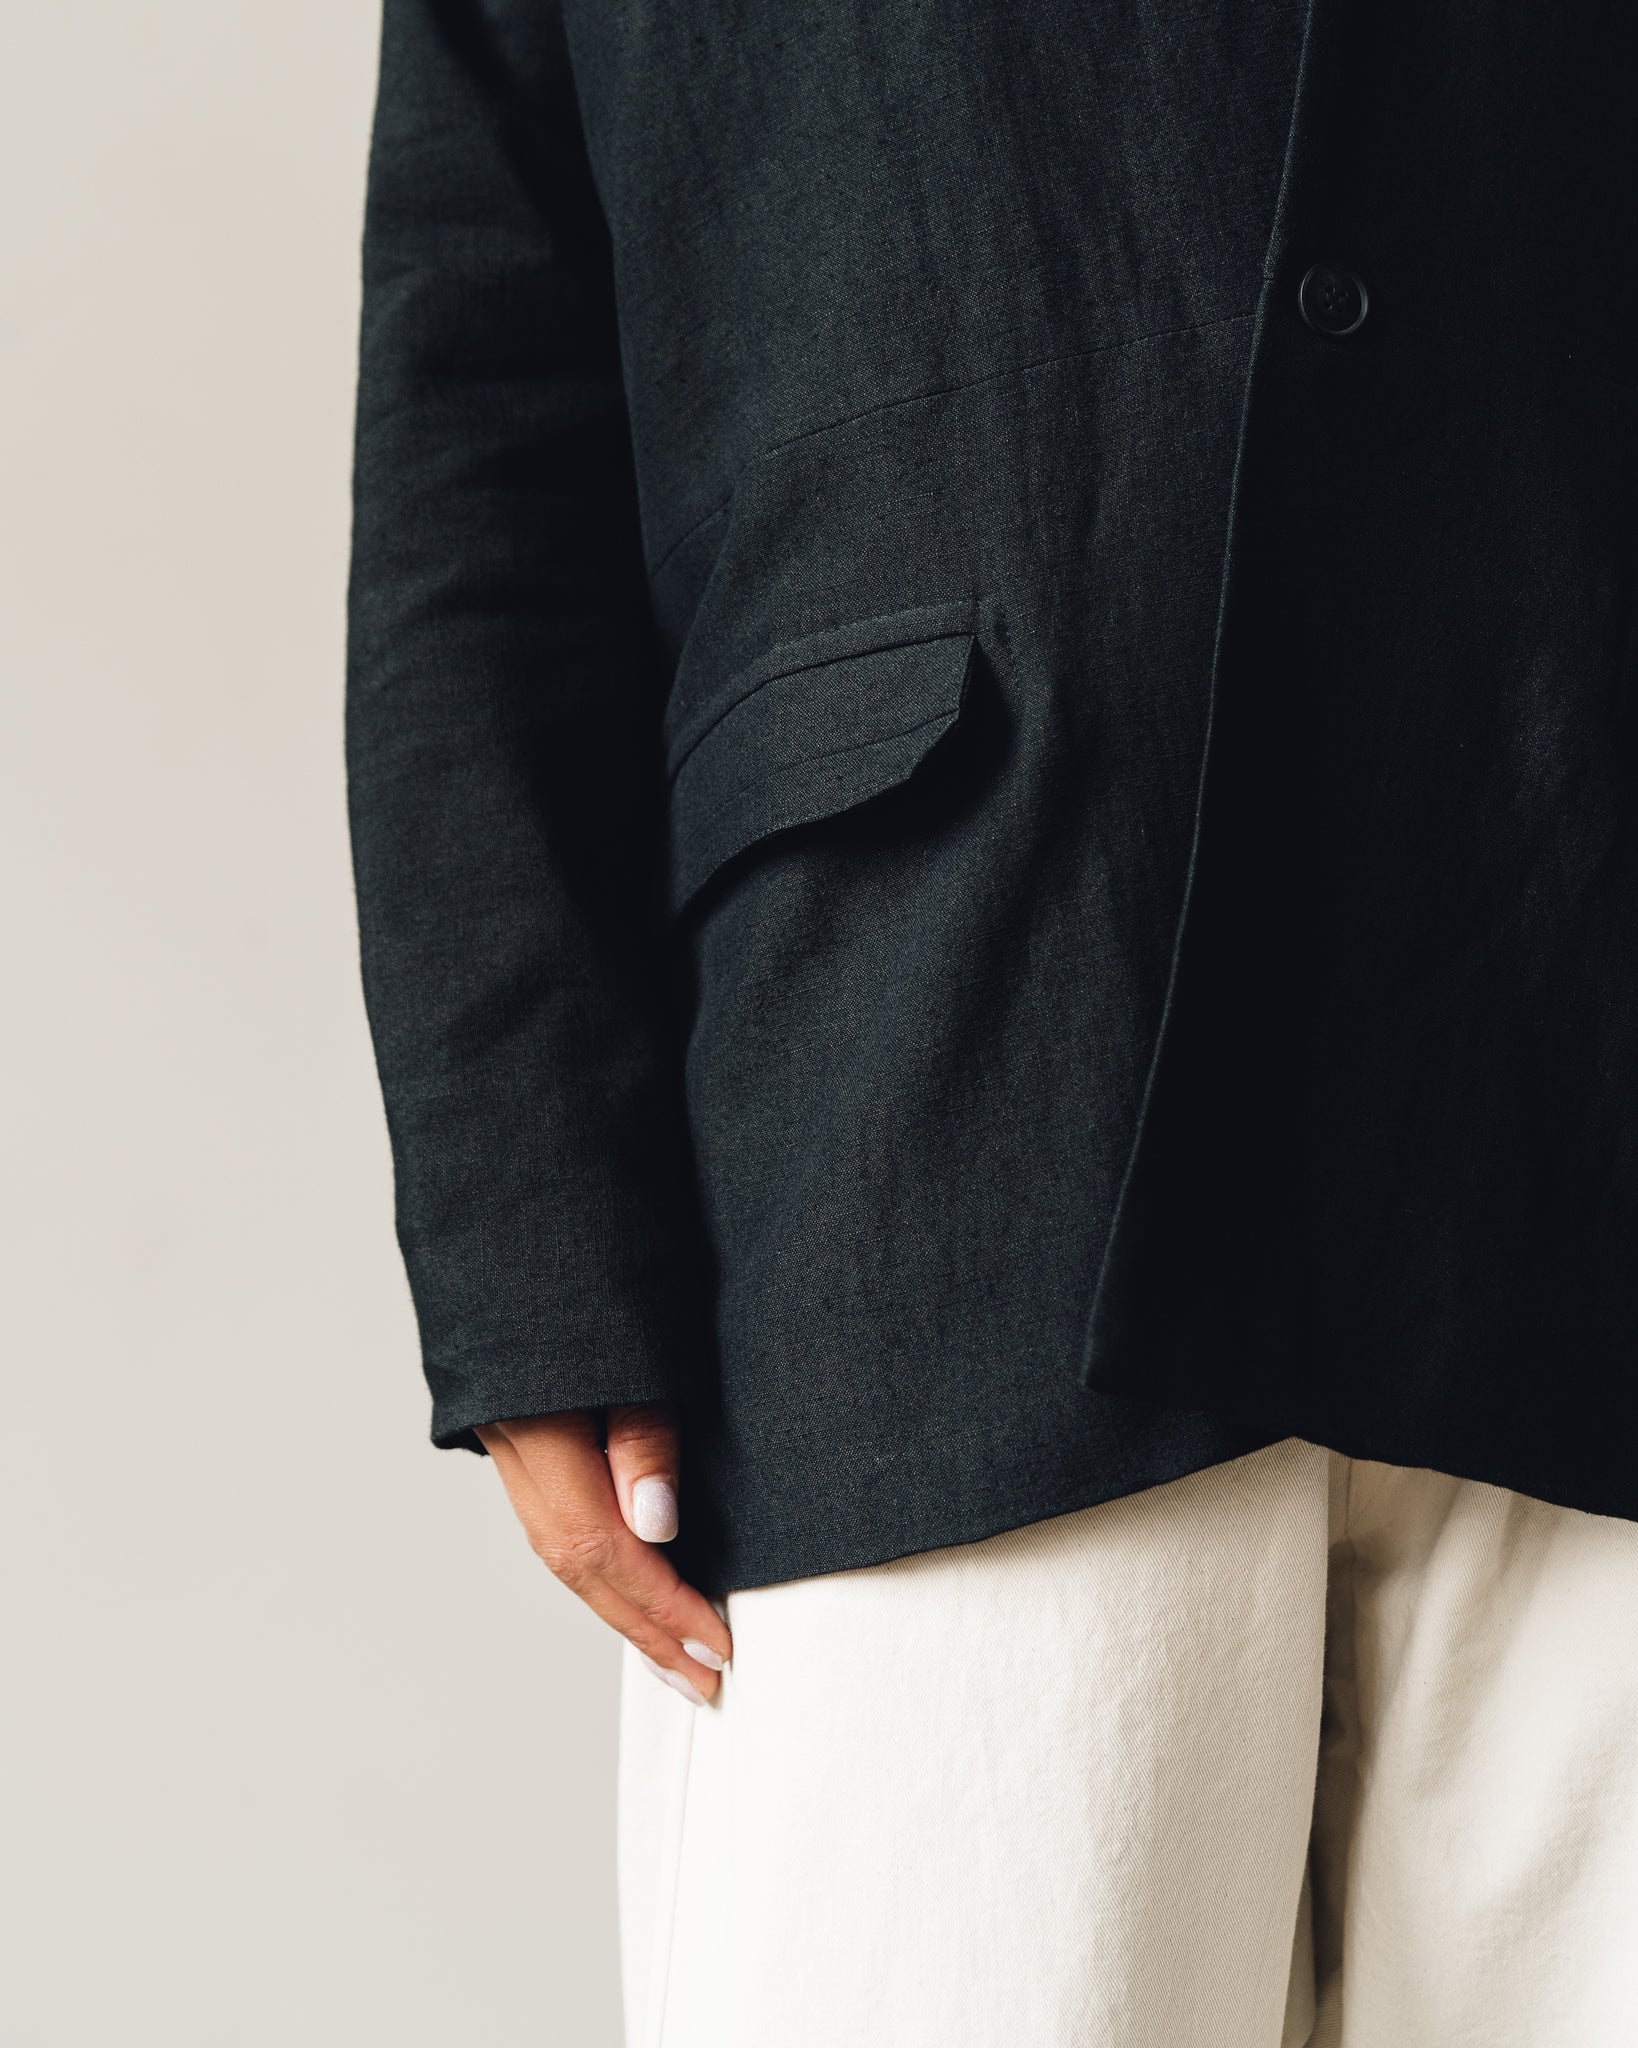 Jan-Jan Van Essche Jacket #36, Black Wool/Linen